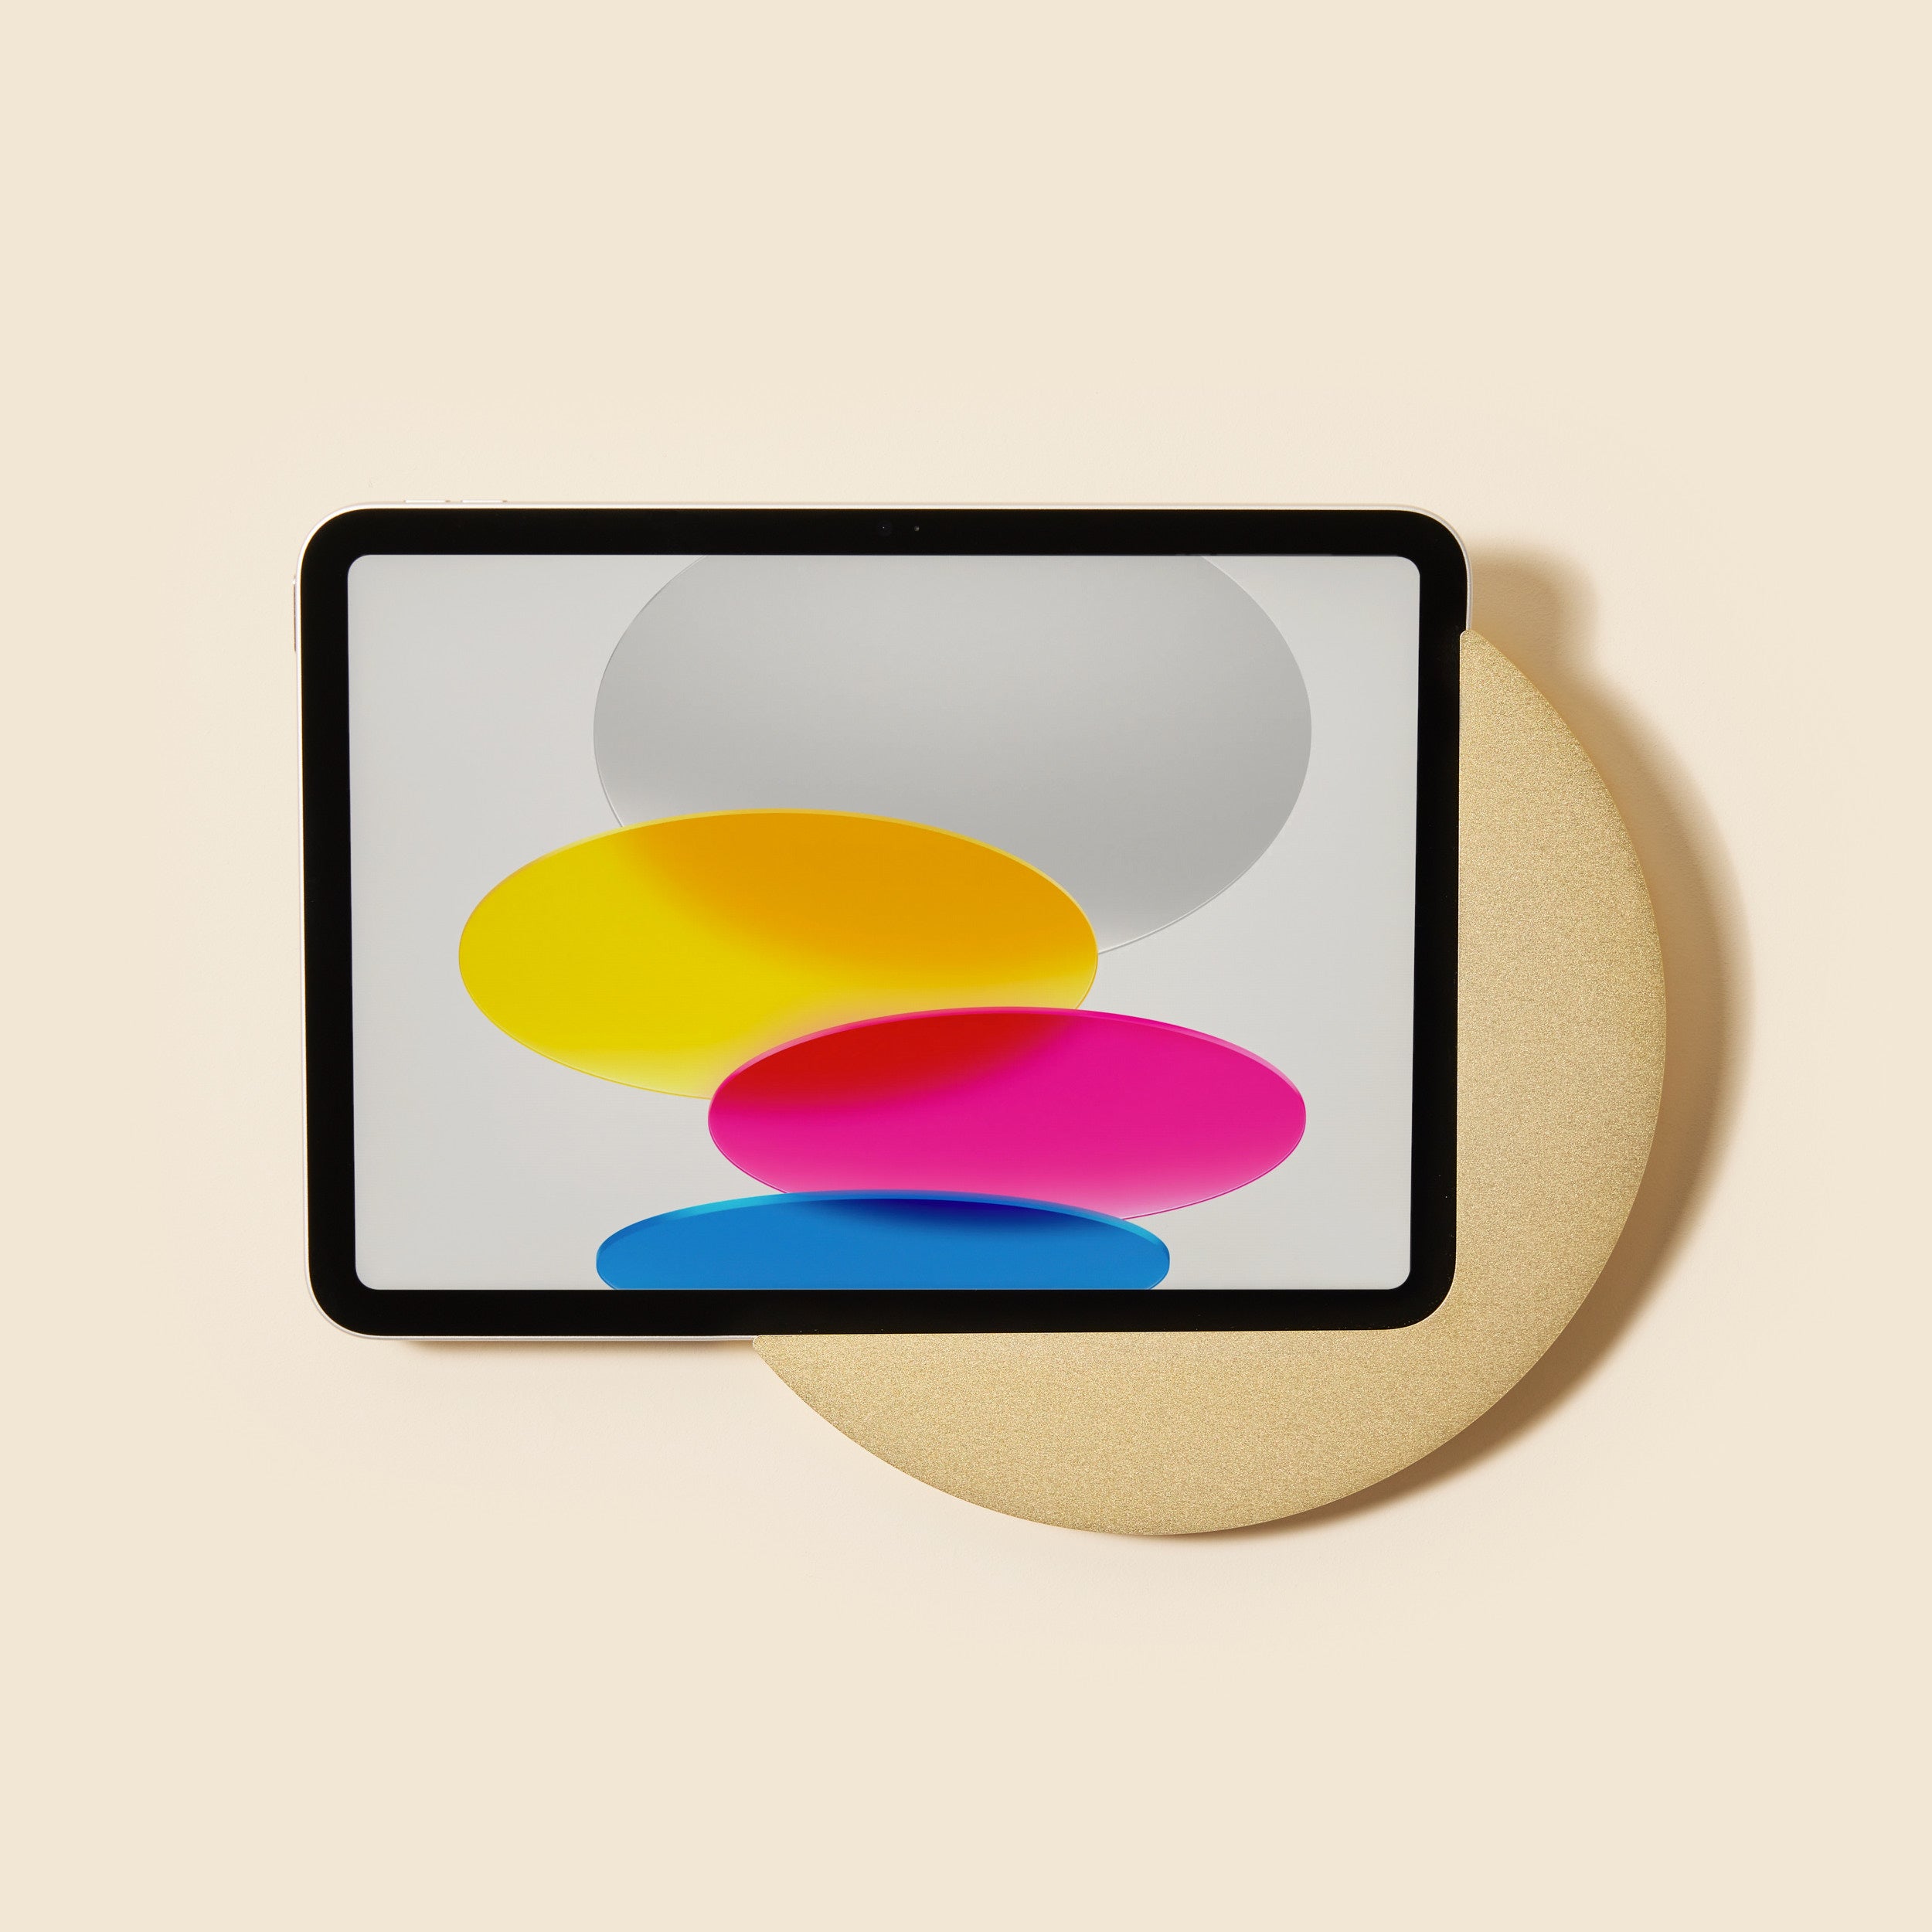 Sunset Tischkonsole für iPad